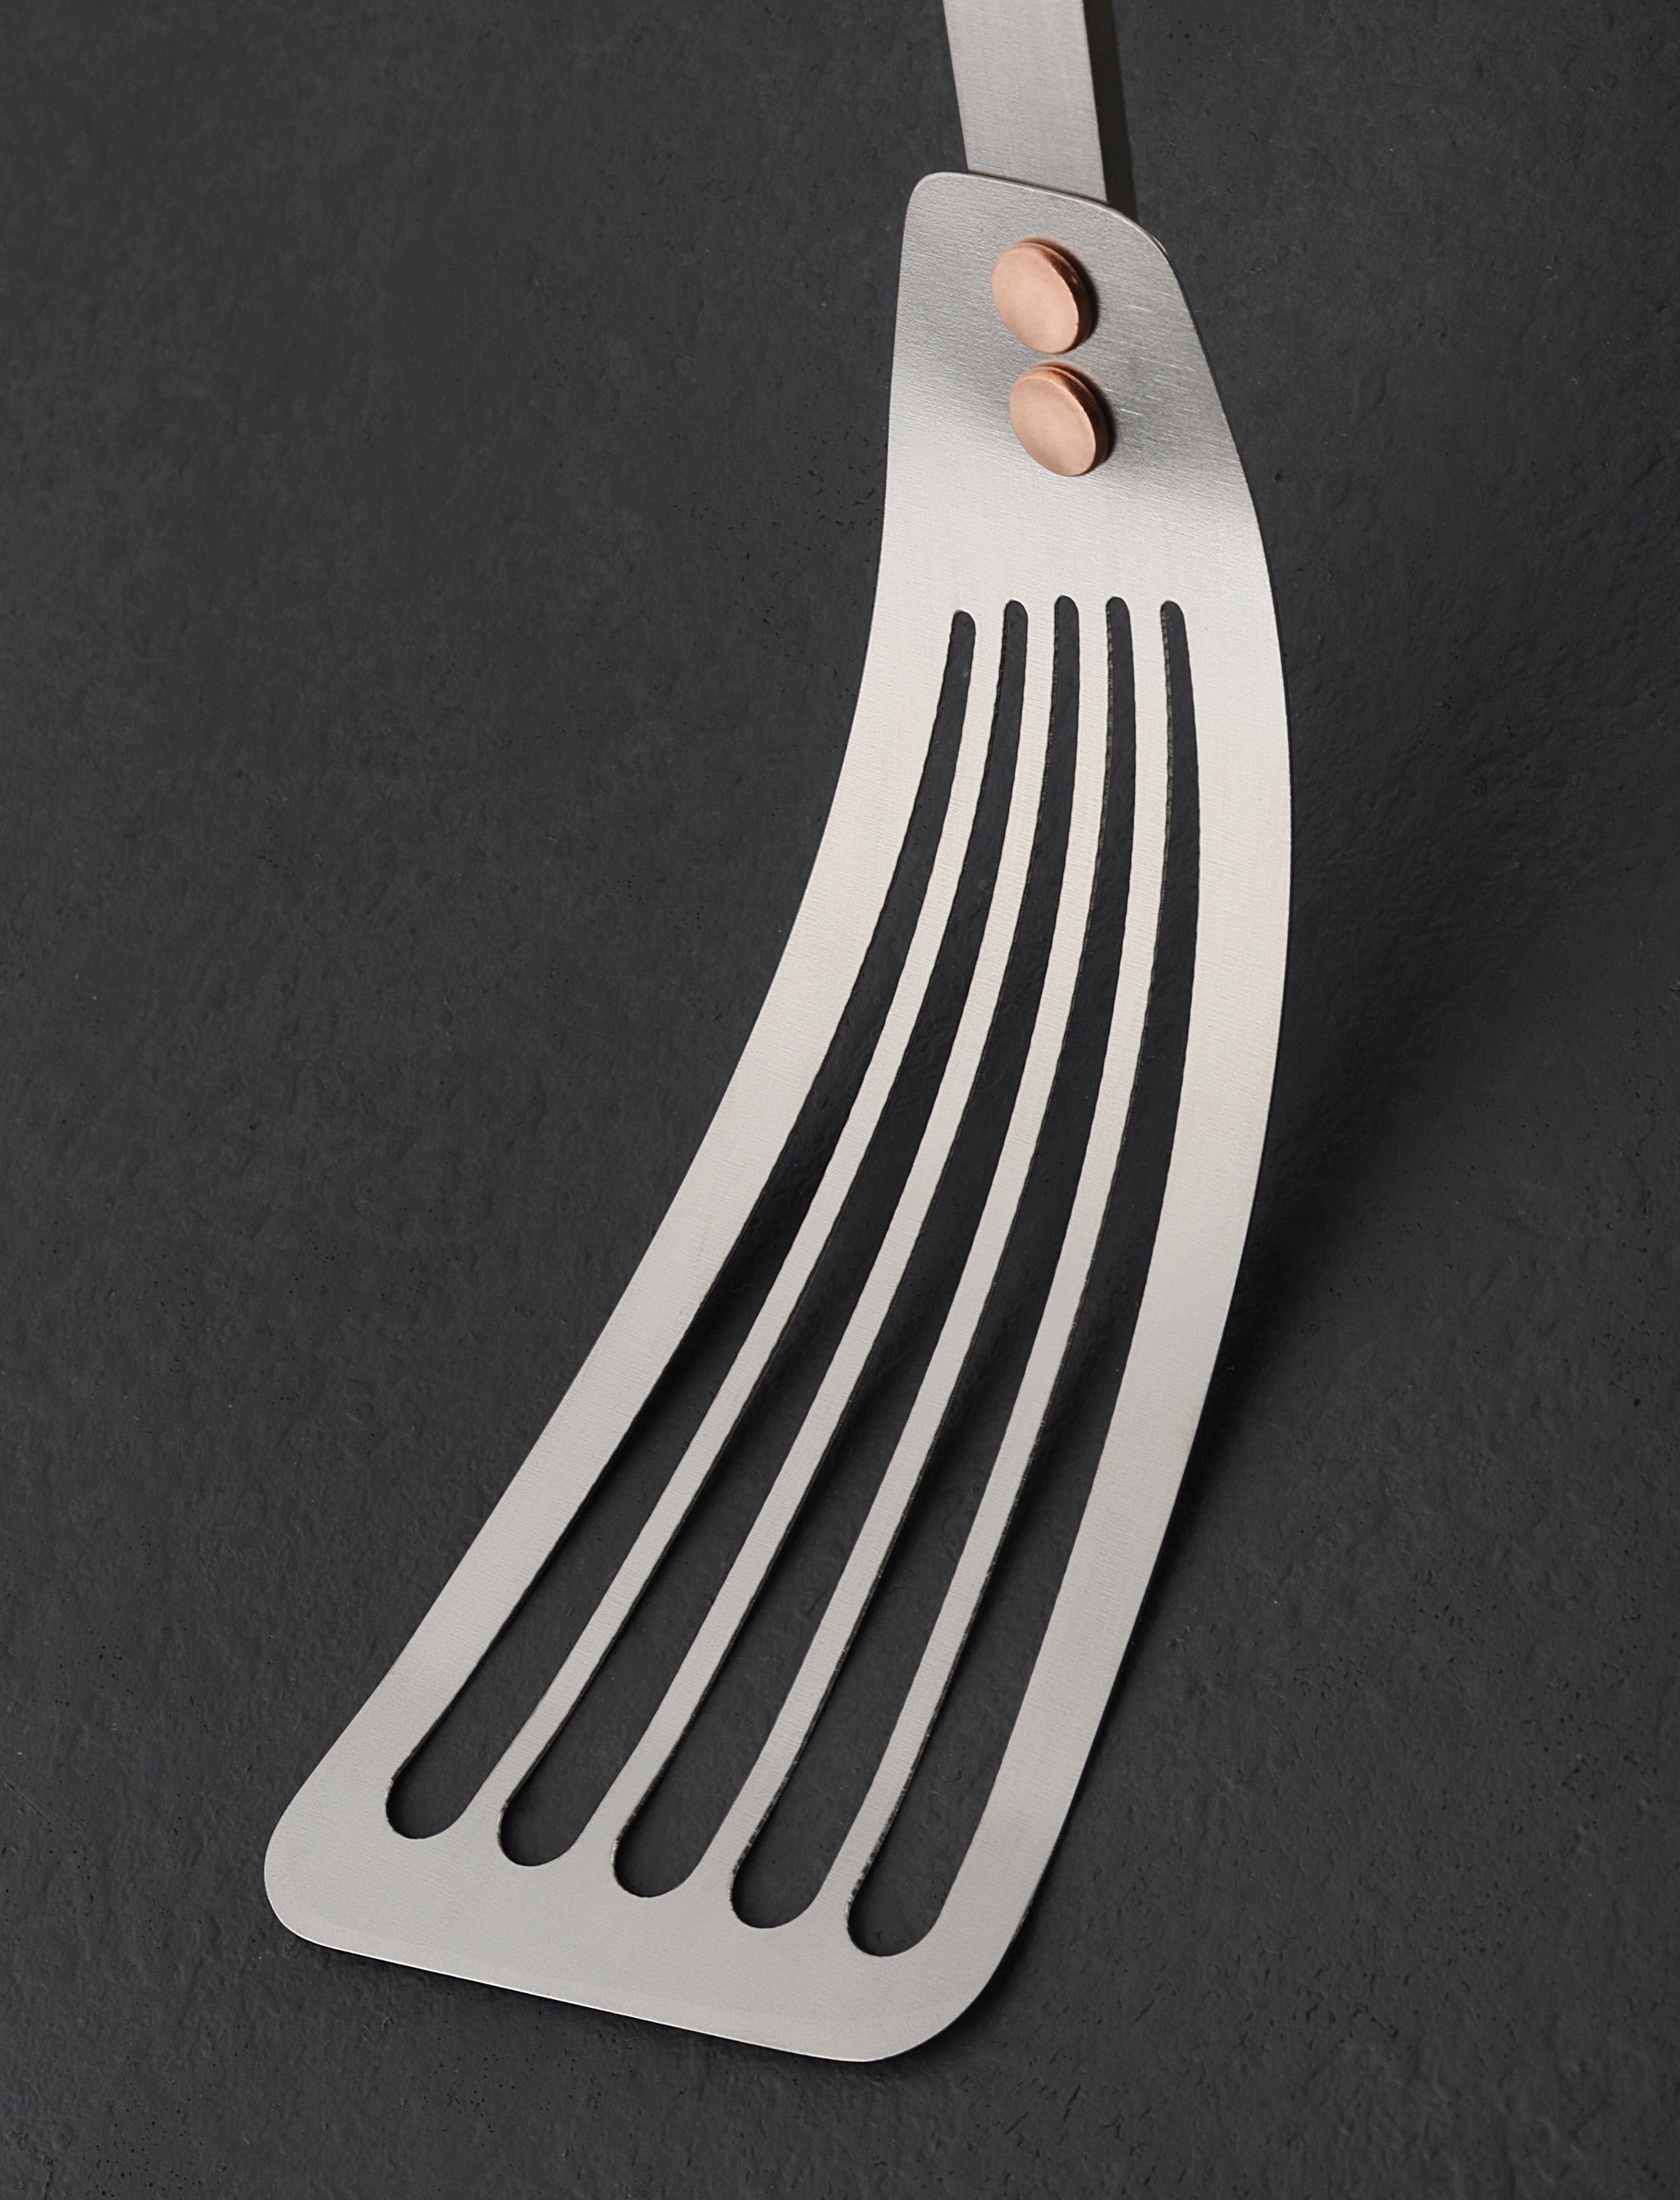 https://eatingtools.com/cdn/shop/files/spatulas-ben-tendick-oregon-tispats-titanium-fish-spatula-43020361072915.jpg?v=1693333912&width=2048